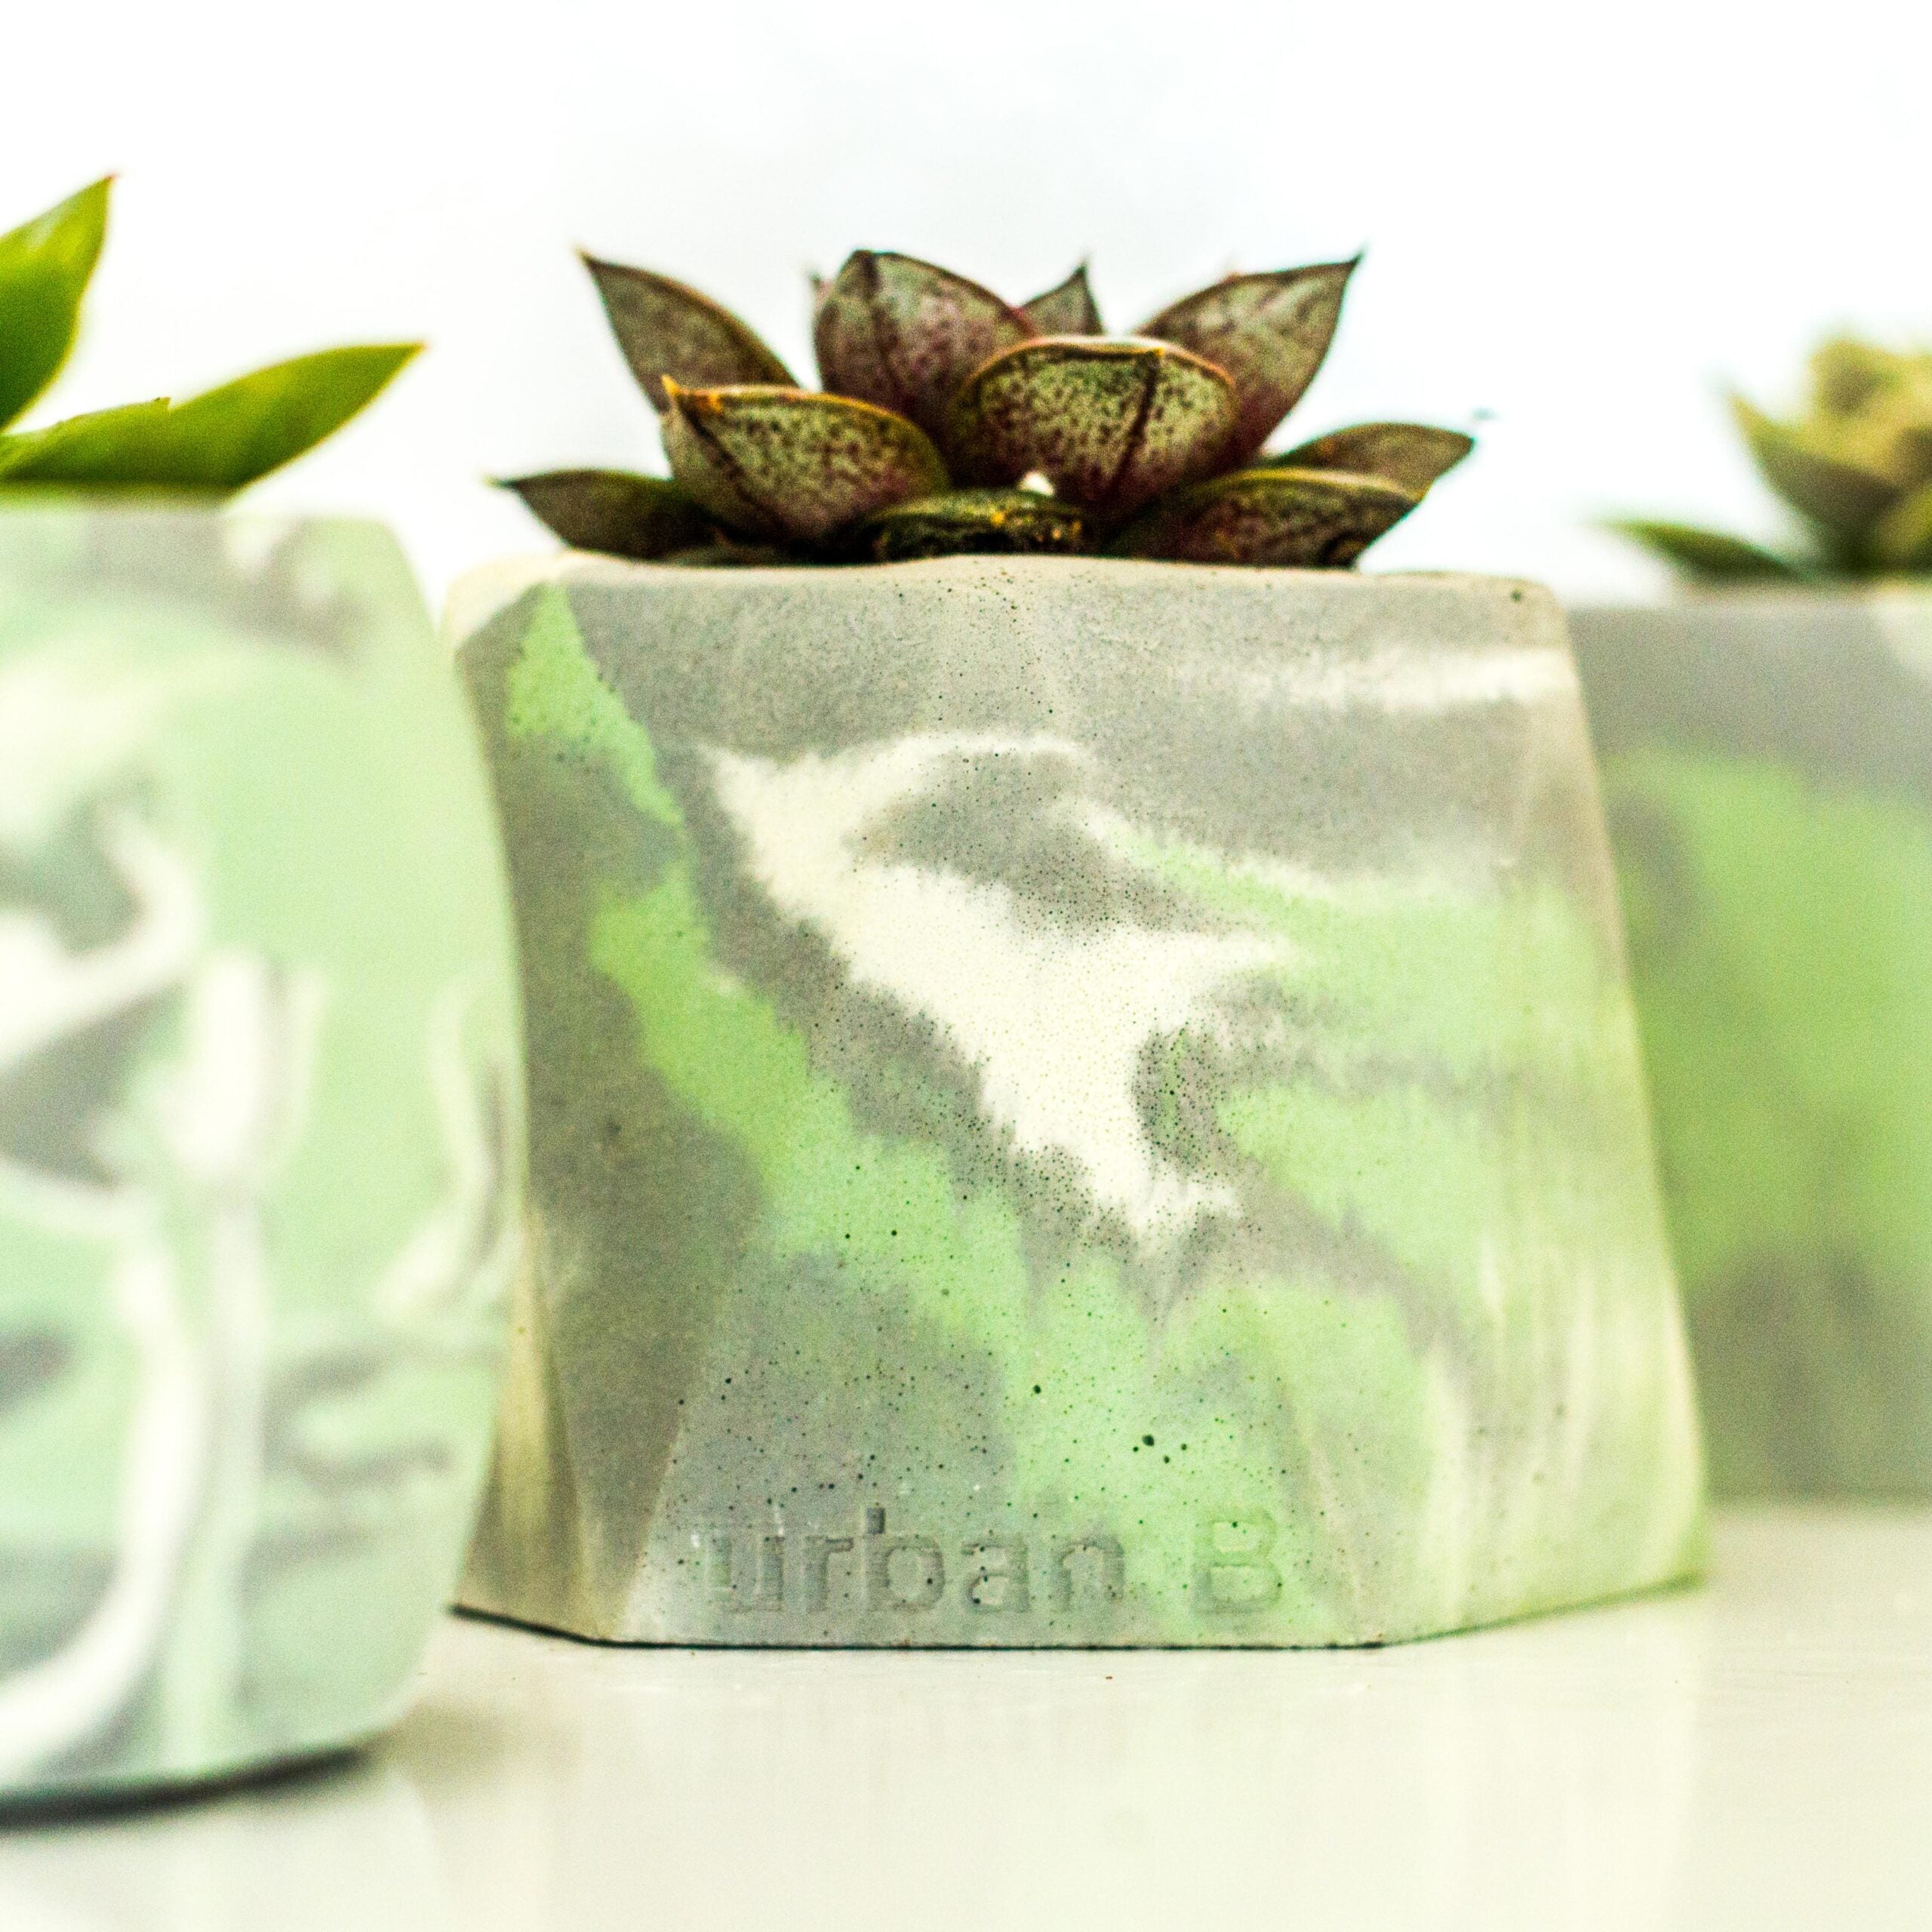 3 Concrete Pots with succulents